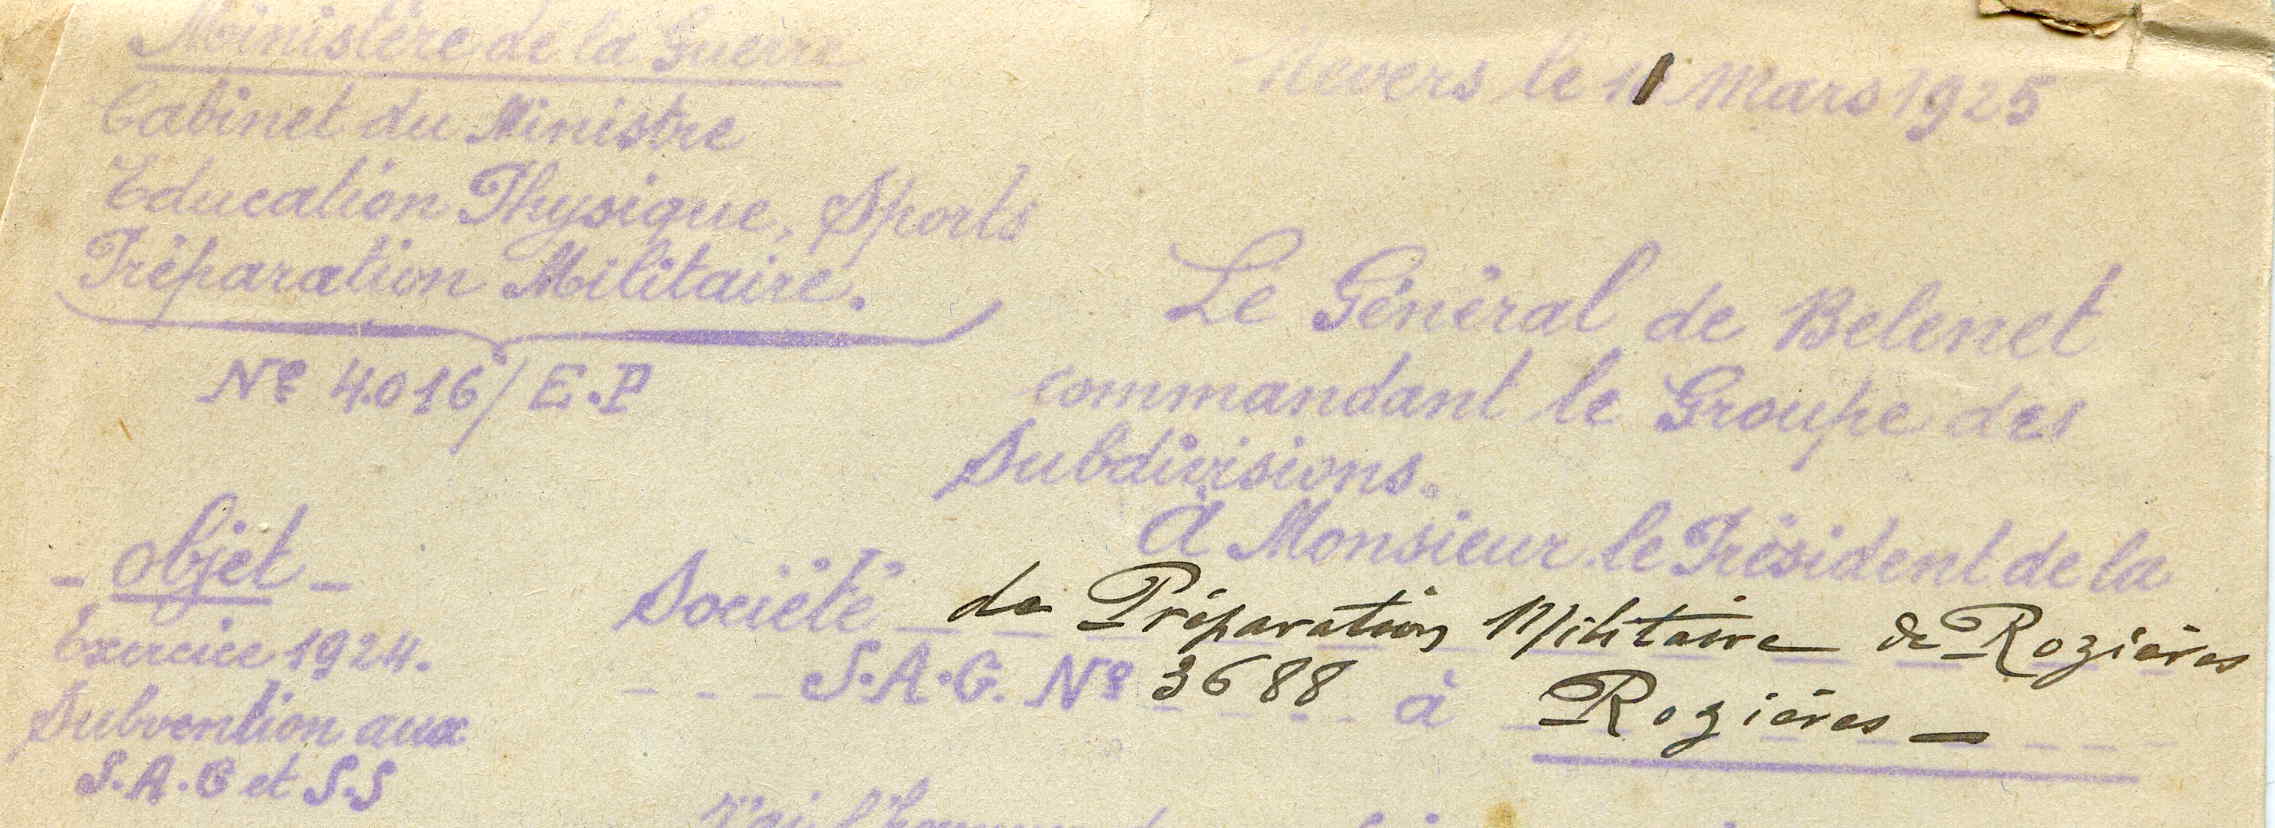 Société agréée par le Ministère de la Guerre sous le n°3688 au JO du Je 20/01/1910